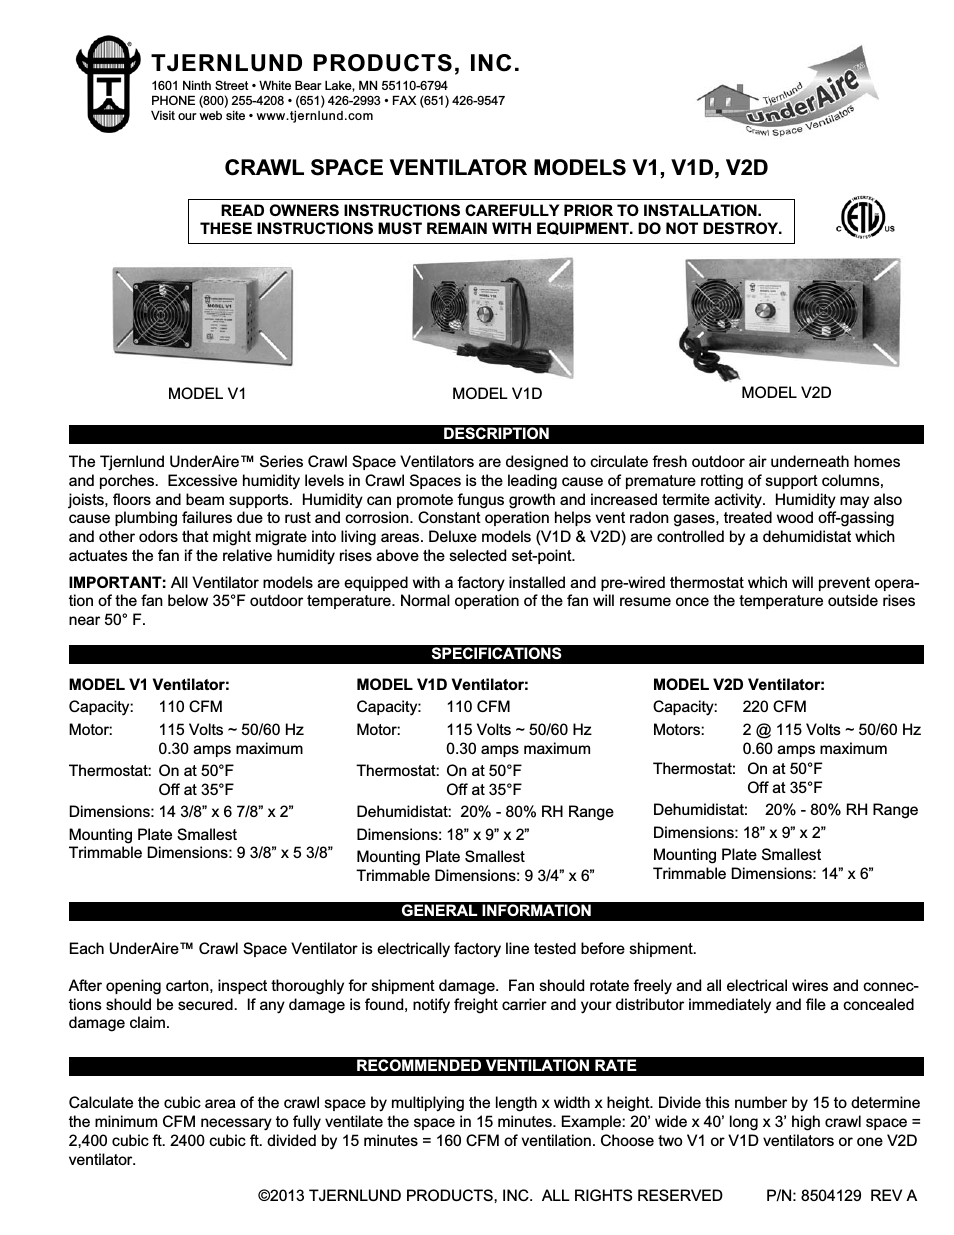 V2D Crawl Space Ventilators 8504129 Rev A